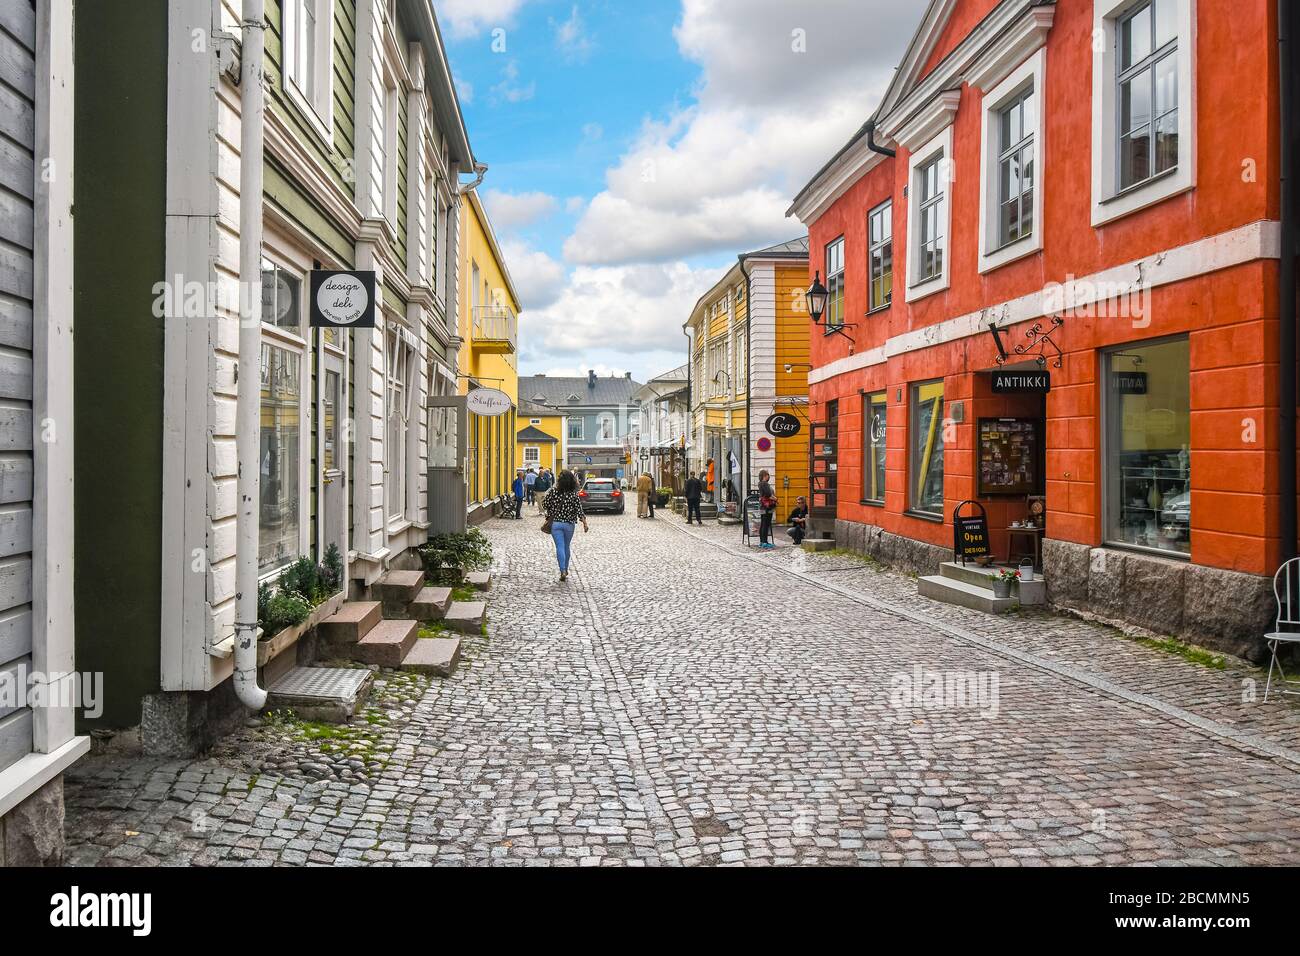 Touristen genießen Sehenswürdigkeiten und Einkaufsmöglichkeiten auf einer der Kopfsteinpflasterstraßen in der farbenfrohen, mittelalterlichen Stadt Porvoo, Finnland. Stockfoto